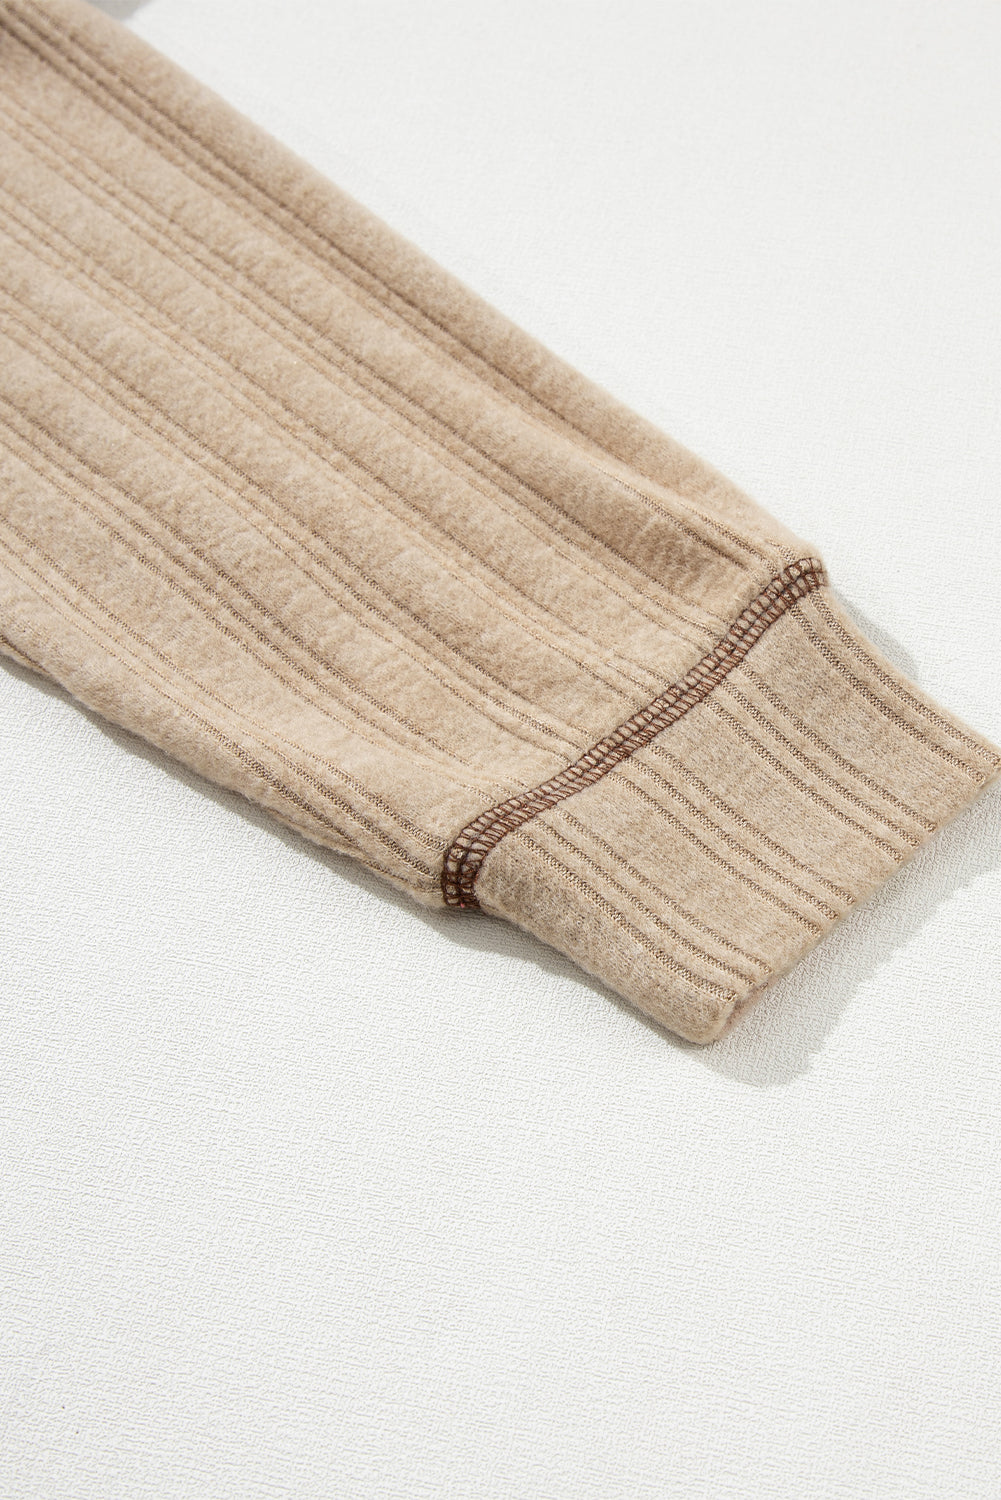 Bledo kaki ohlapna, teksturirana pletena majica z izpostavljenimi šivi